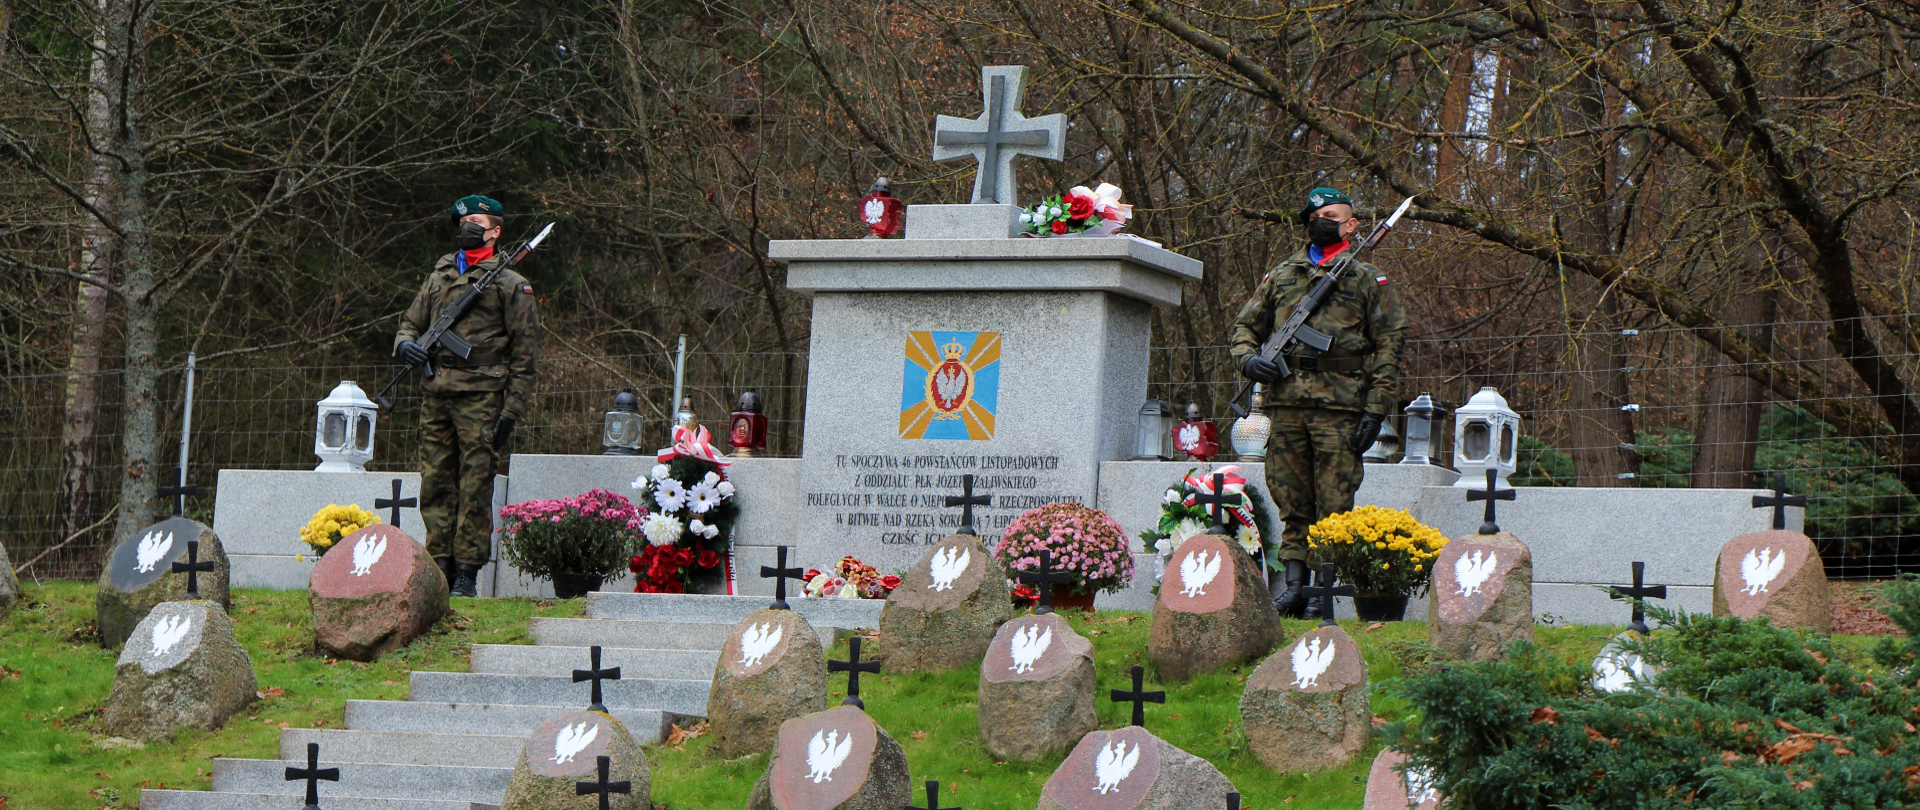 Uroczystości upamiętniające 190. rocznicę powstania listopadowego w Kopnej Górze